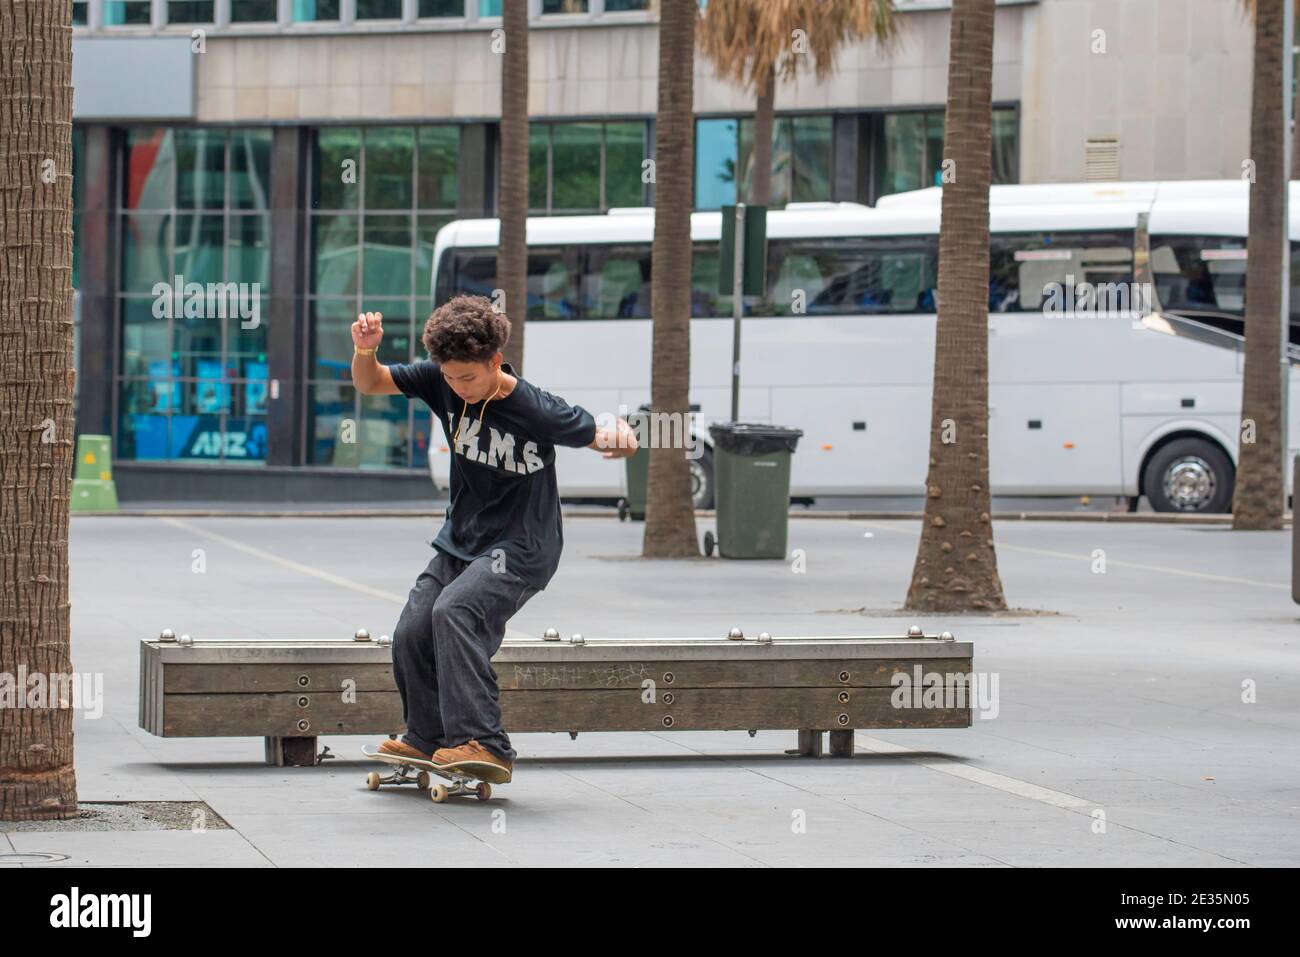 Un jeune coureur de skateboard australien effectue un flip ou une ollie sur un banc de bois à Sydney, en Australie (séquence 2 sur 3) Banque D'Images